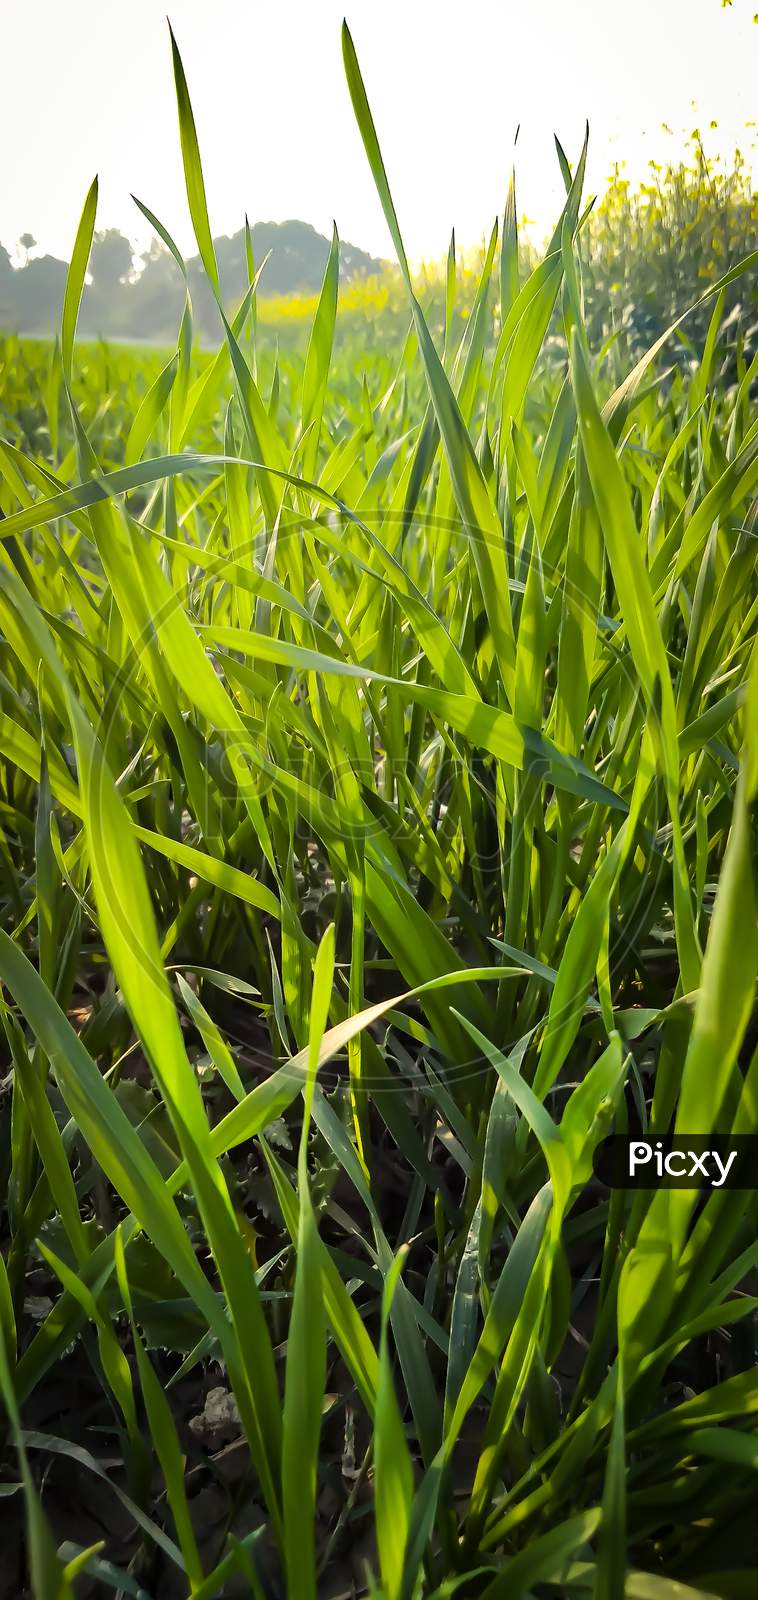 Long green grass